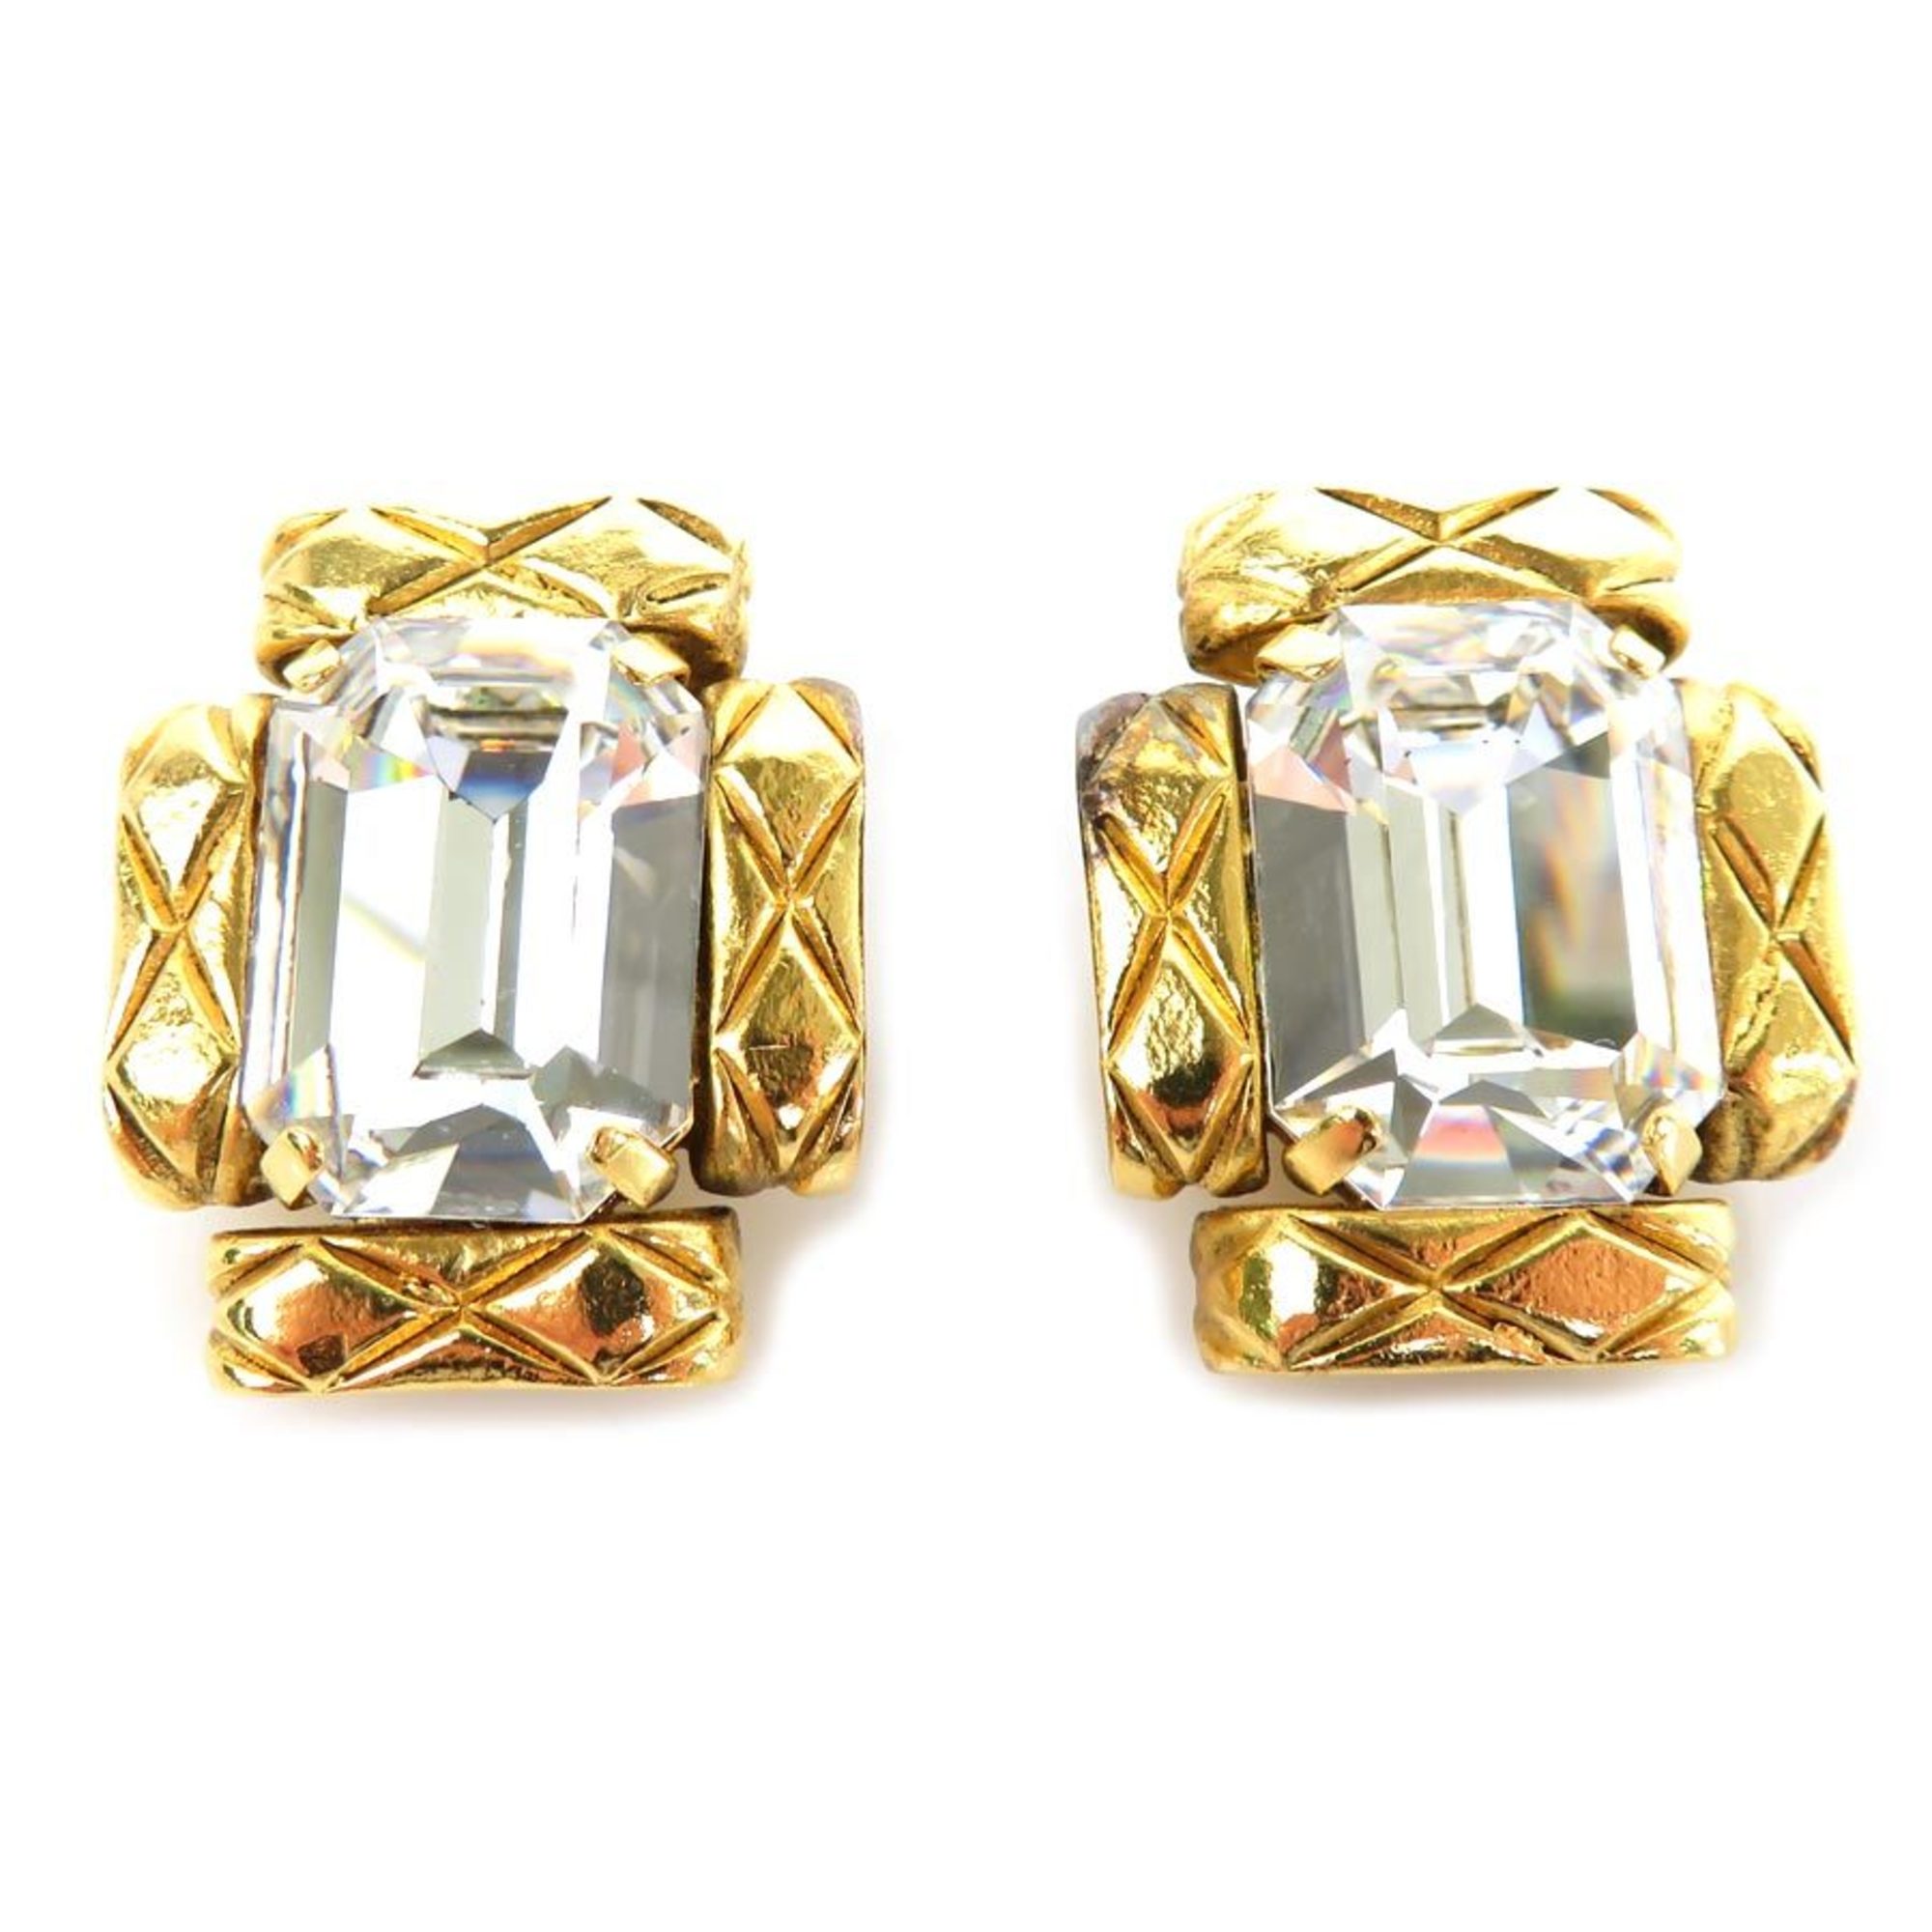 CHANEL earrings metal/rhinestone gold/silver